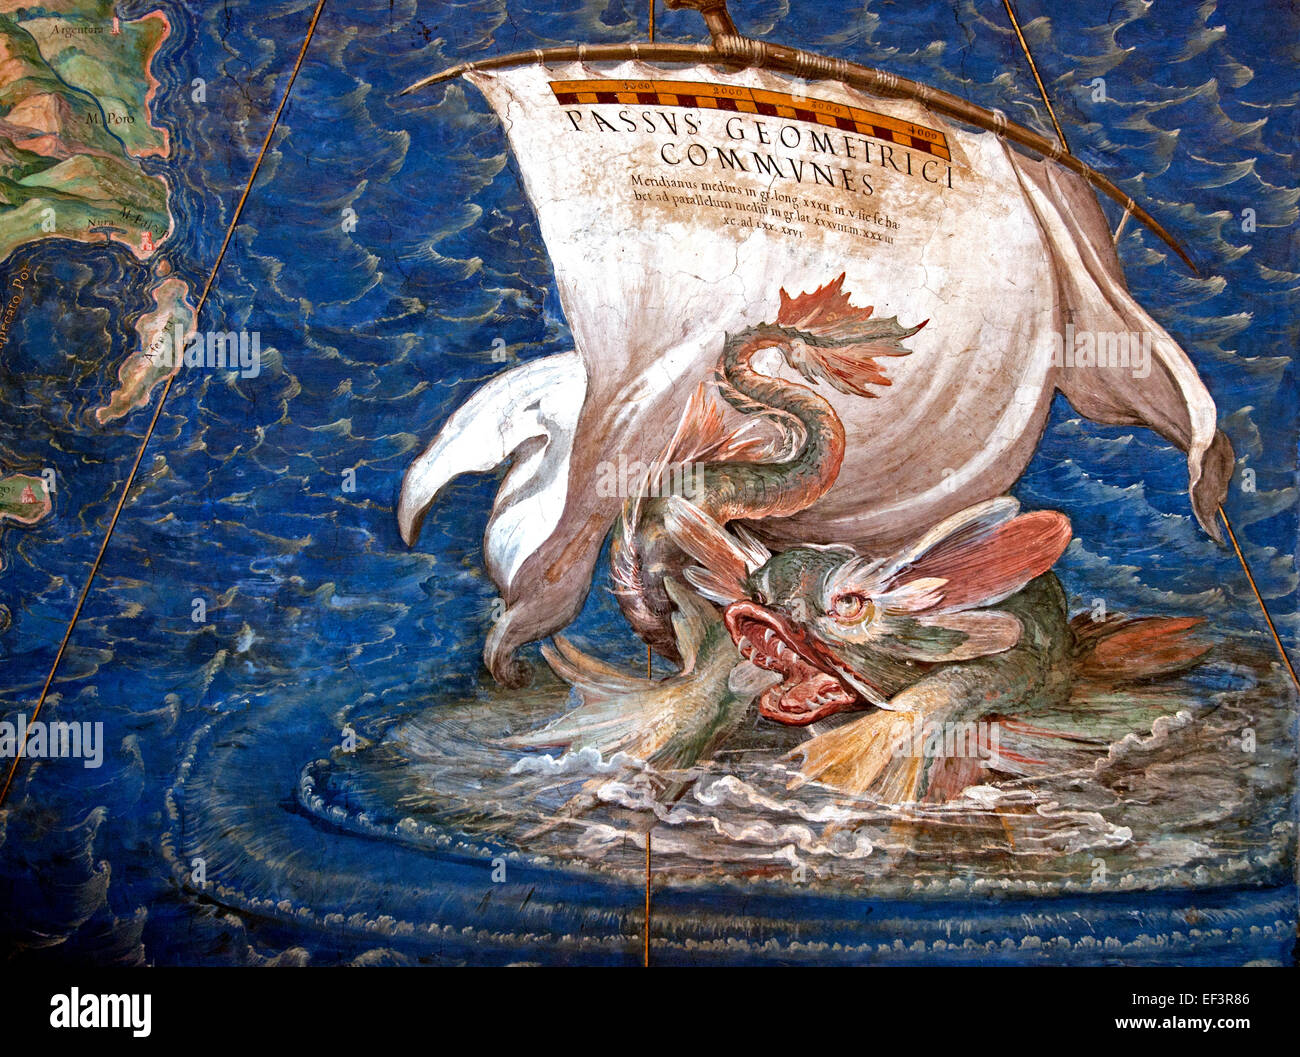 Un galléon dans l'Adriatique, détail de la 'Galleria delle carte Geografiche', 1580-83 Danti, Egnazio (1536-86) Vatican Rome Italie cartes géographiques Banque D'Images